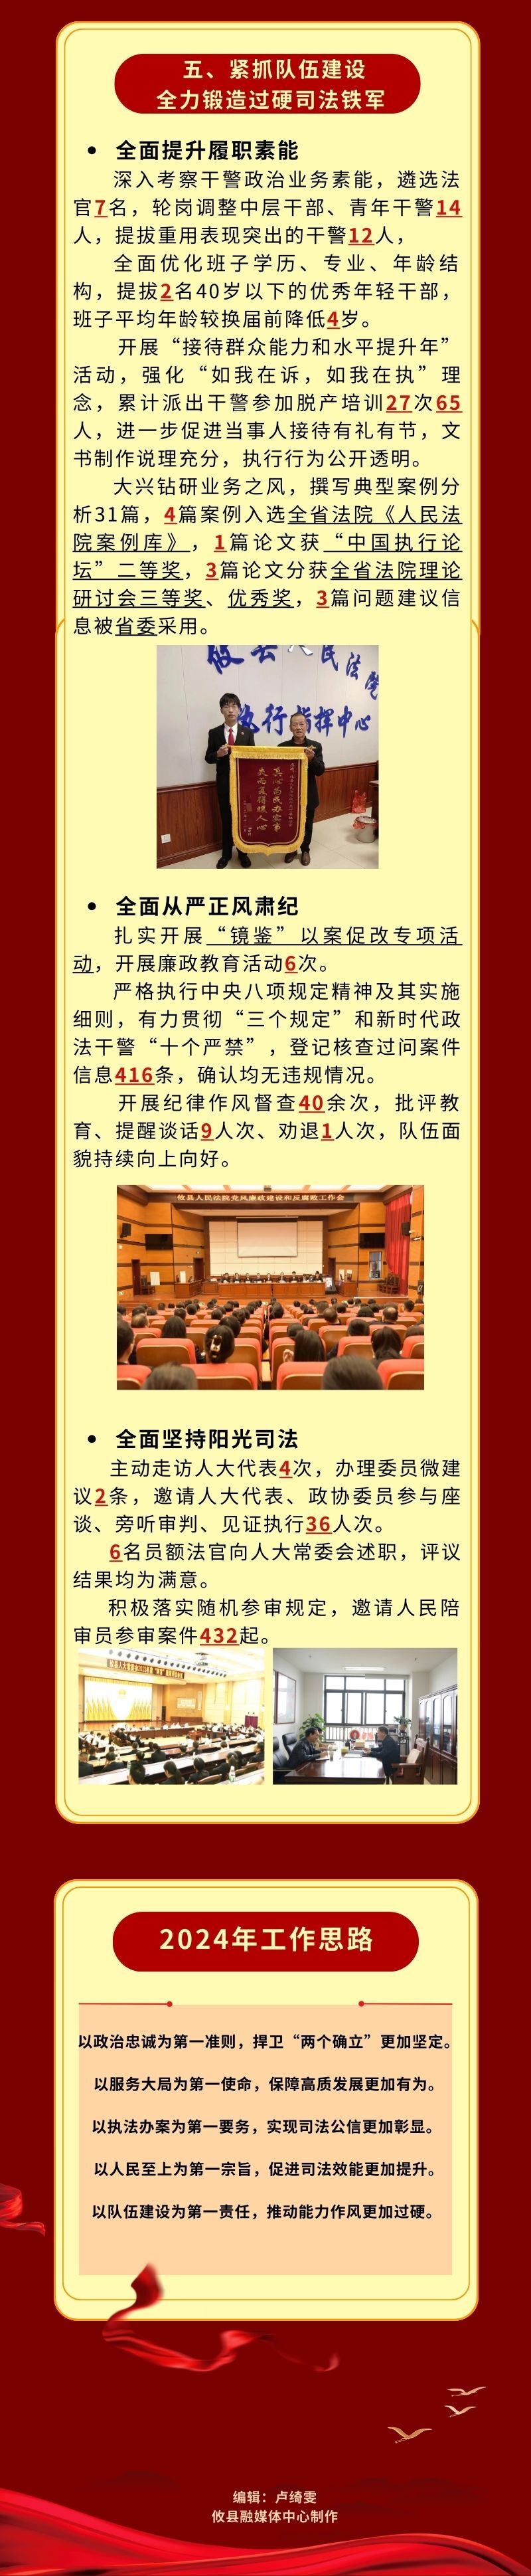 【图解】一图读懂攸县人民法院工作报告